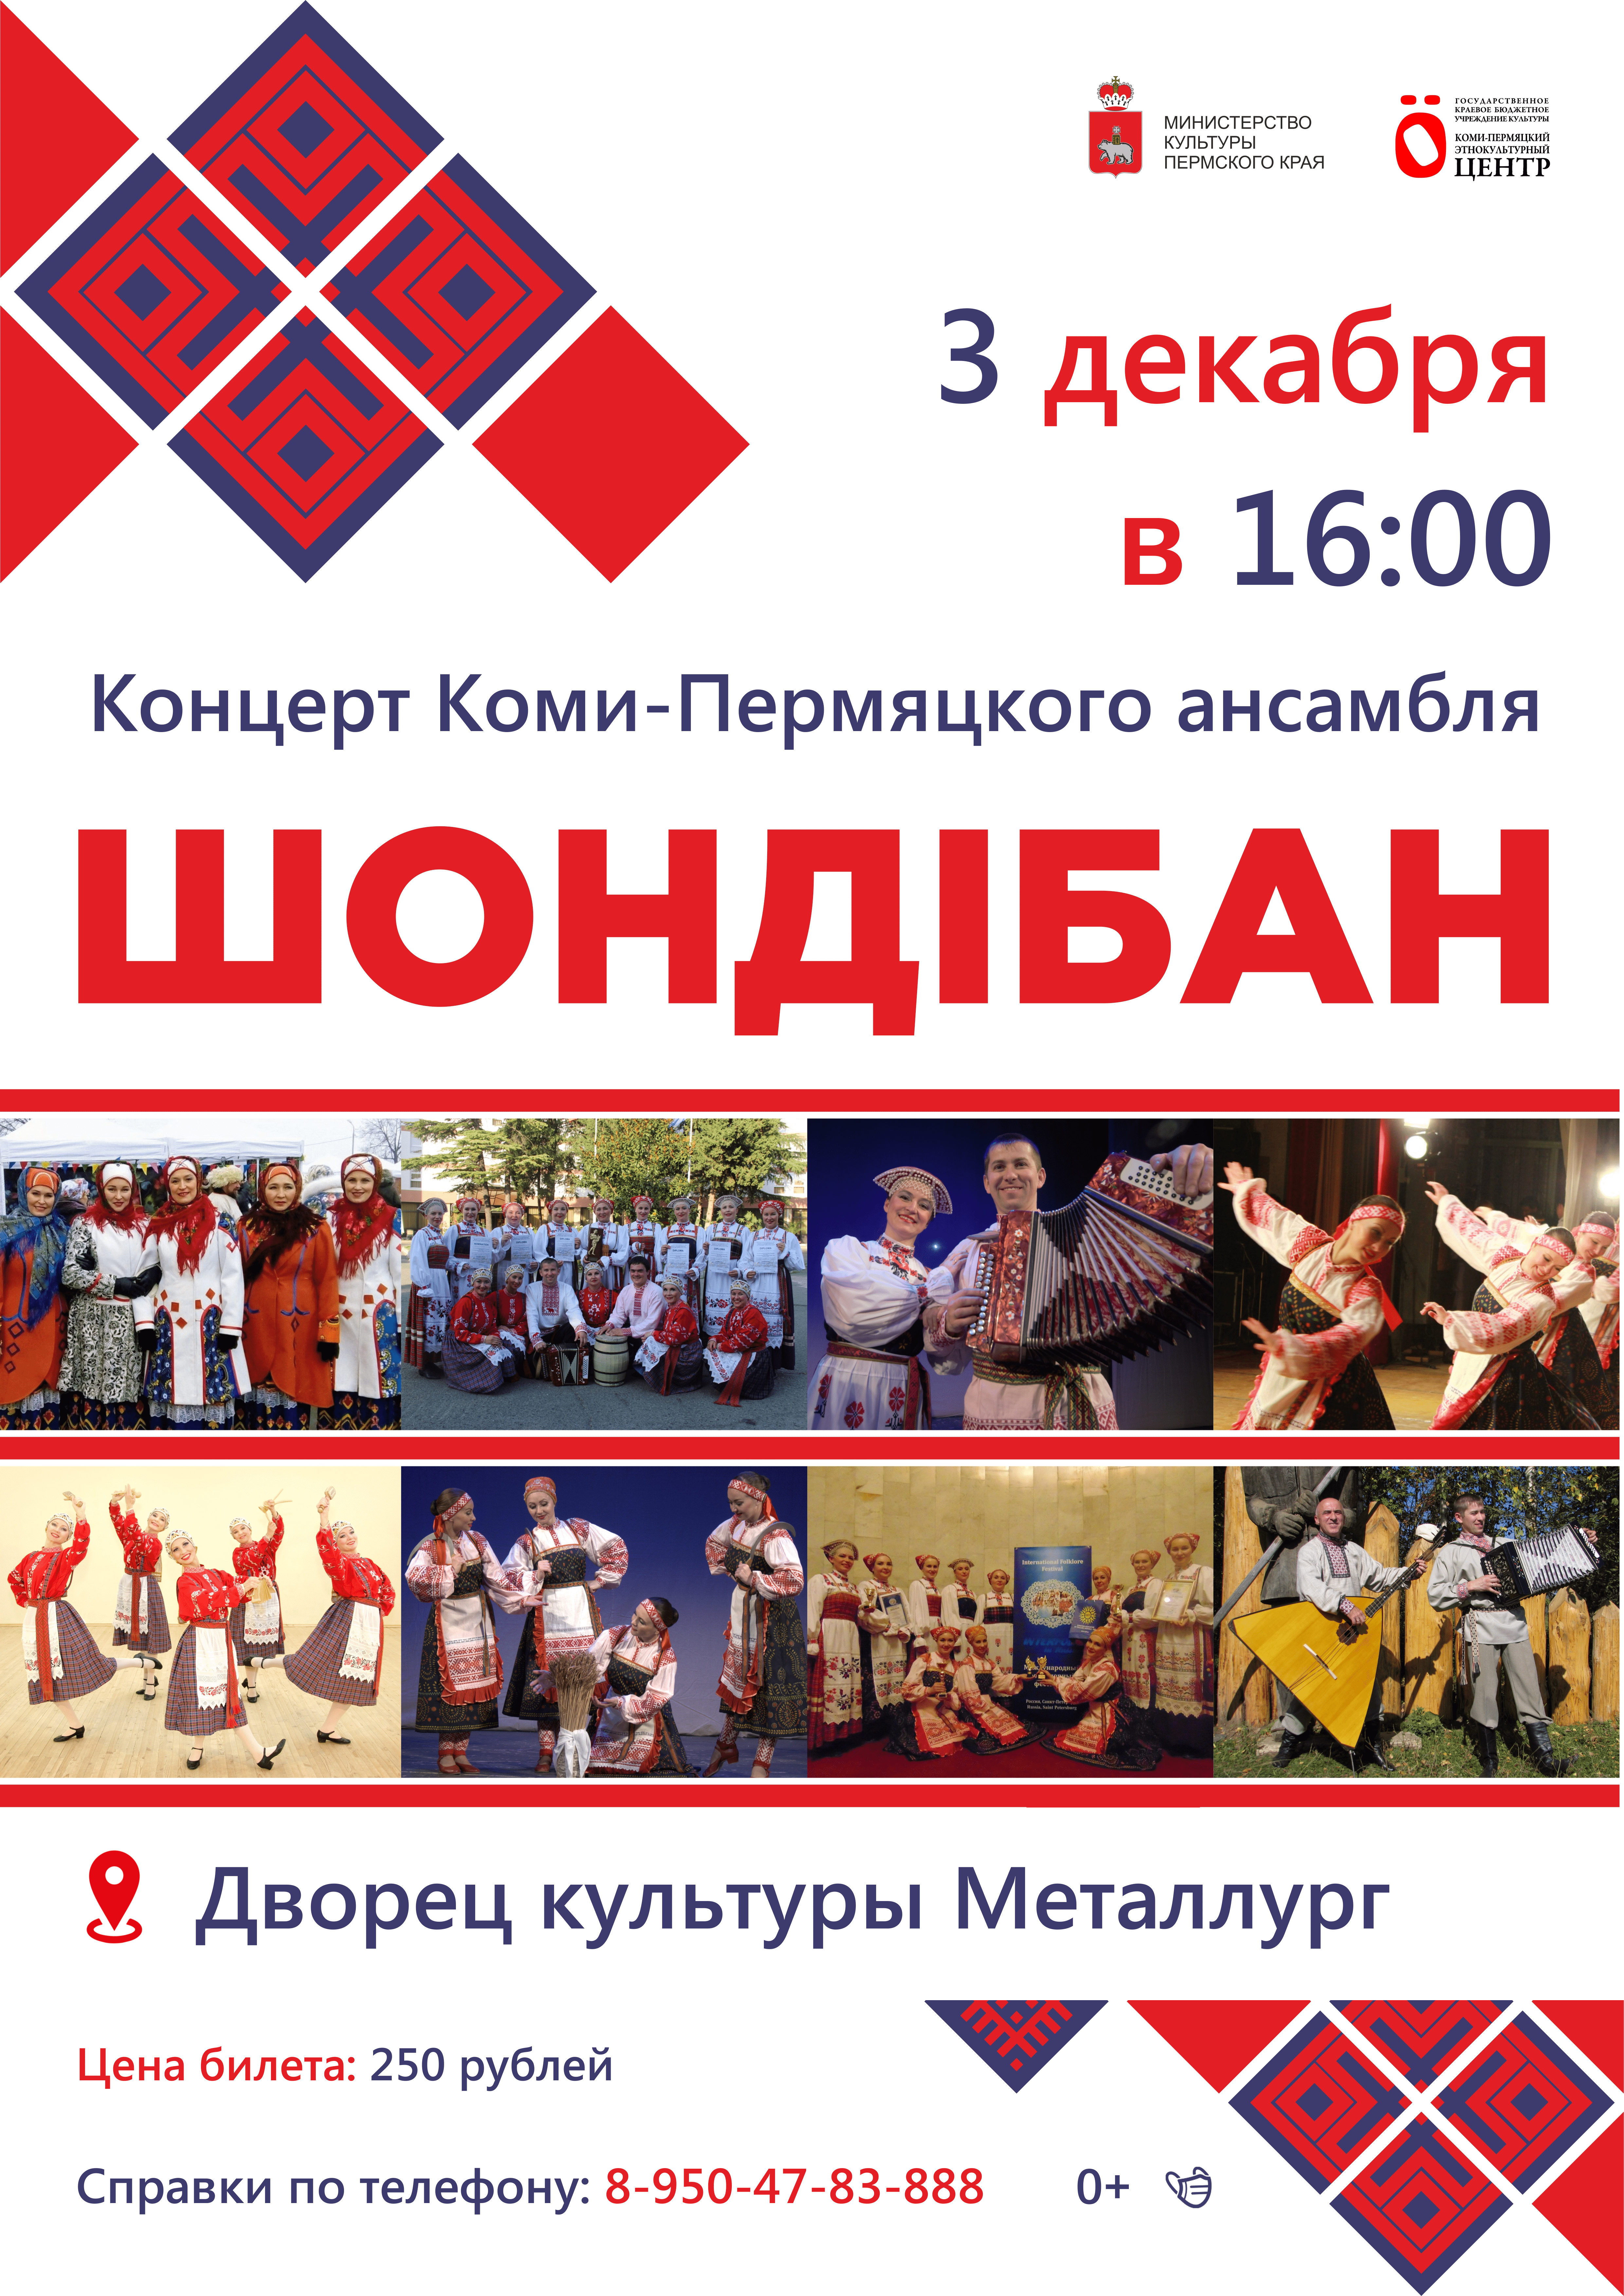 Концерт коми-пермяцкого ансамбля «Шондiбан» (0+).